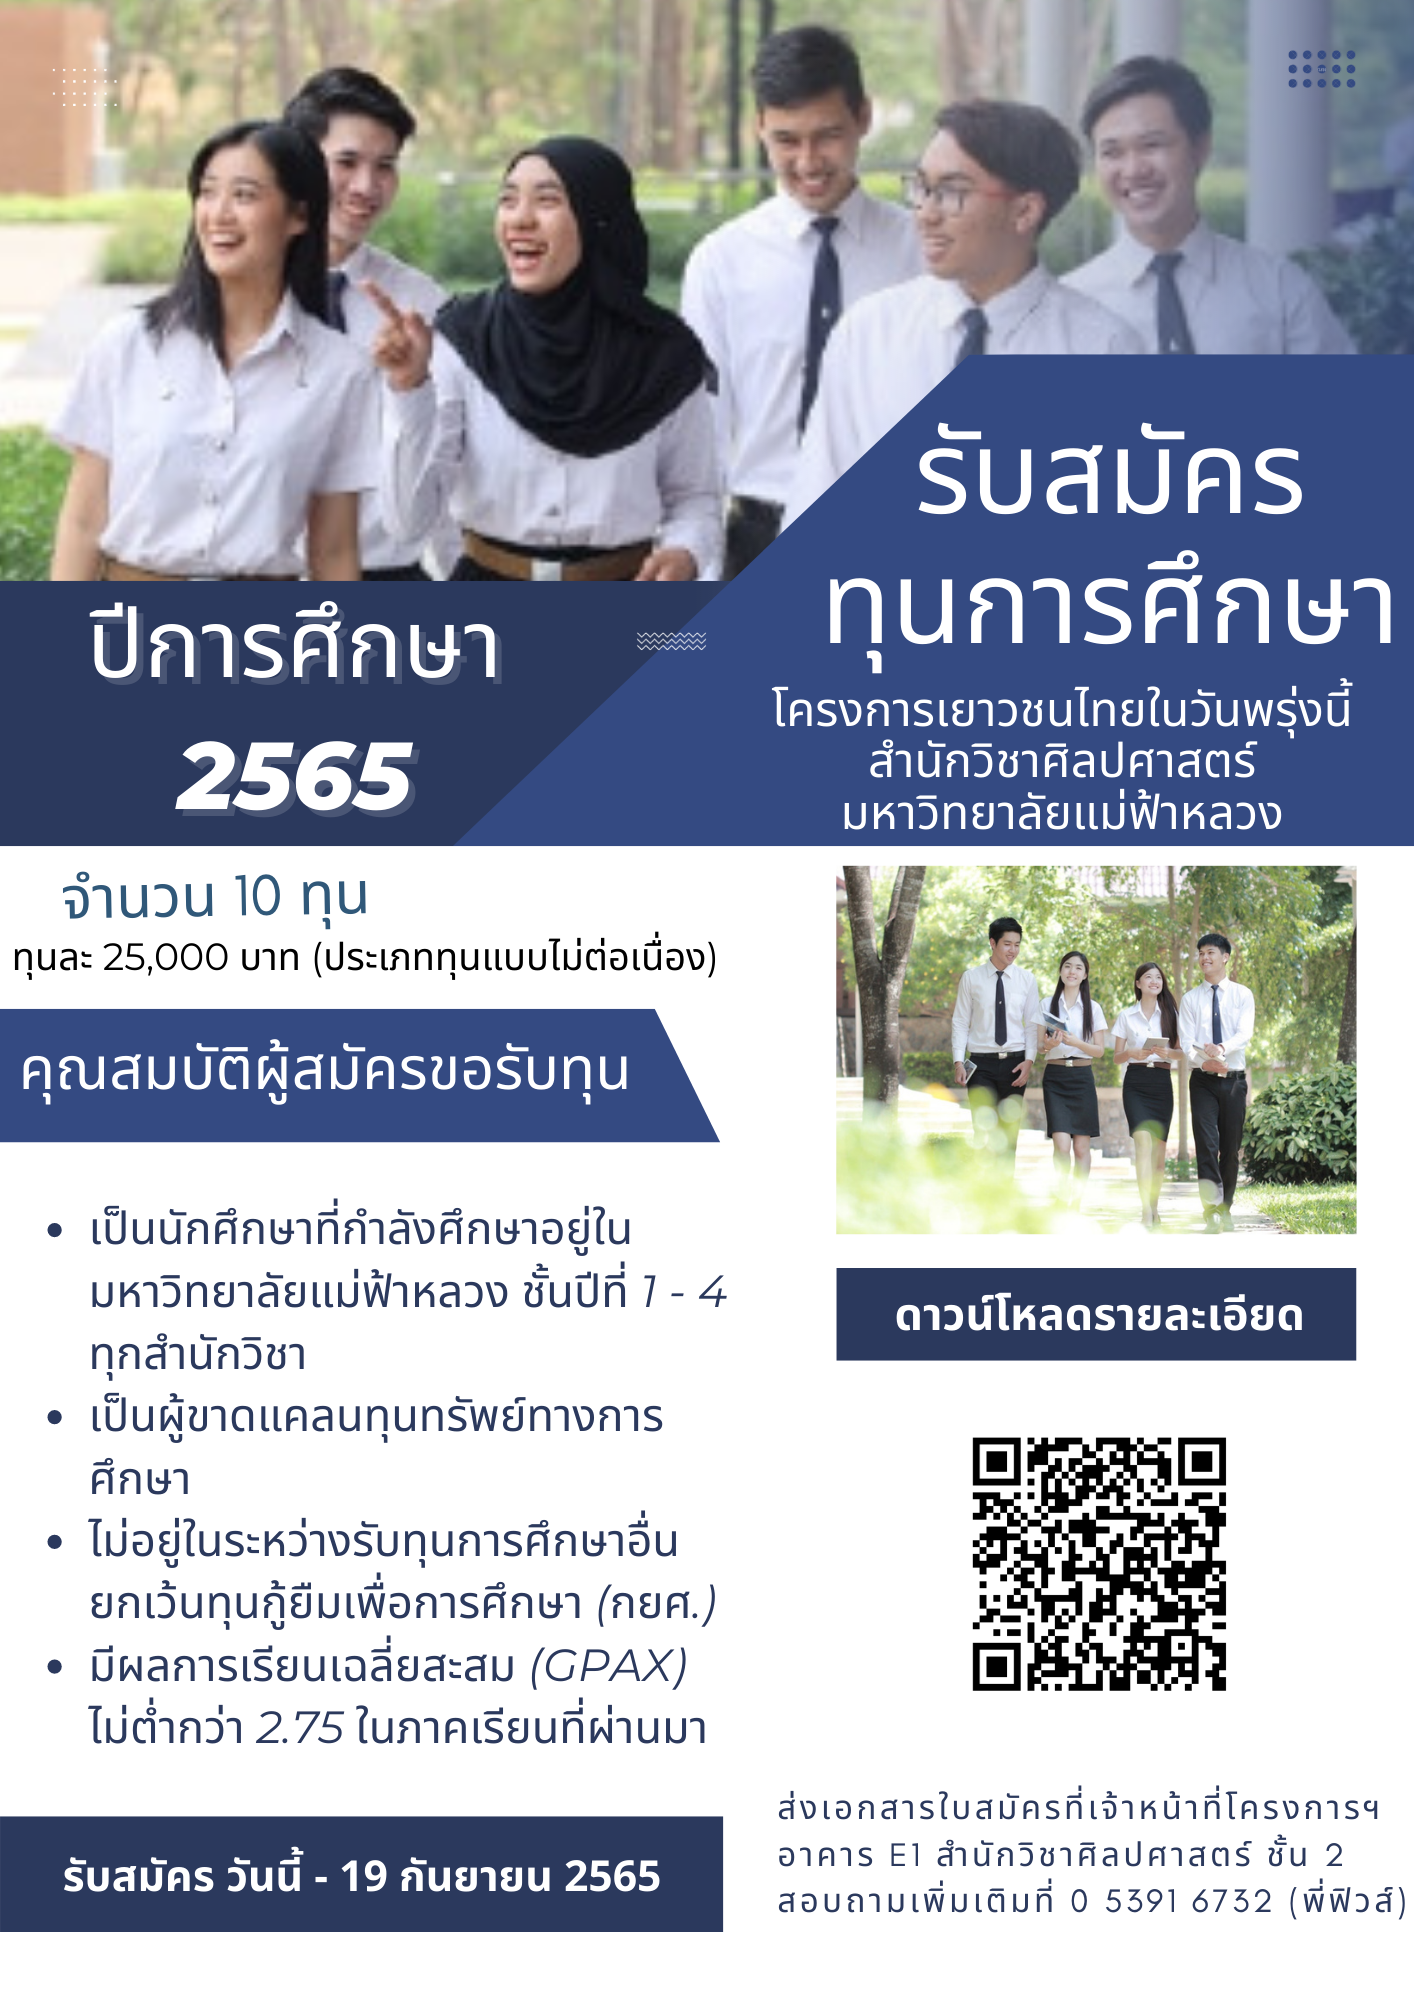 รับสมัครทุนการศึกษาโครงการเยาวชนไทยในวันพรุ่งนี้